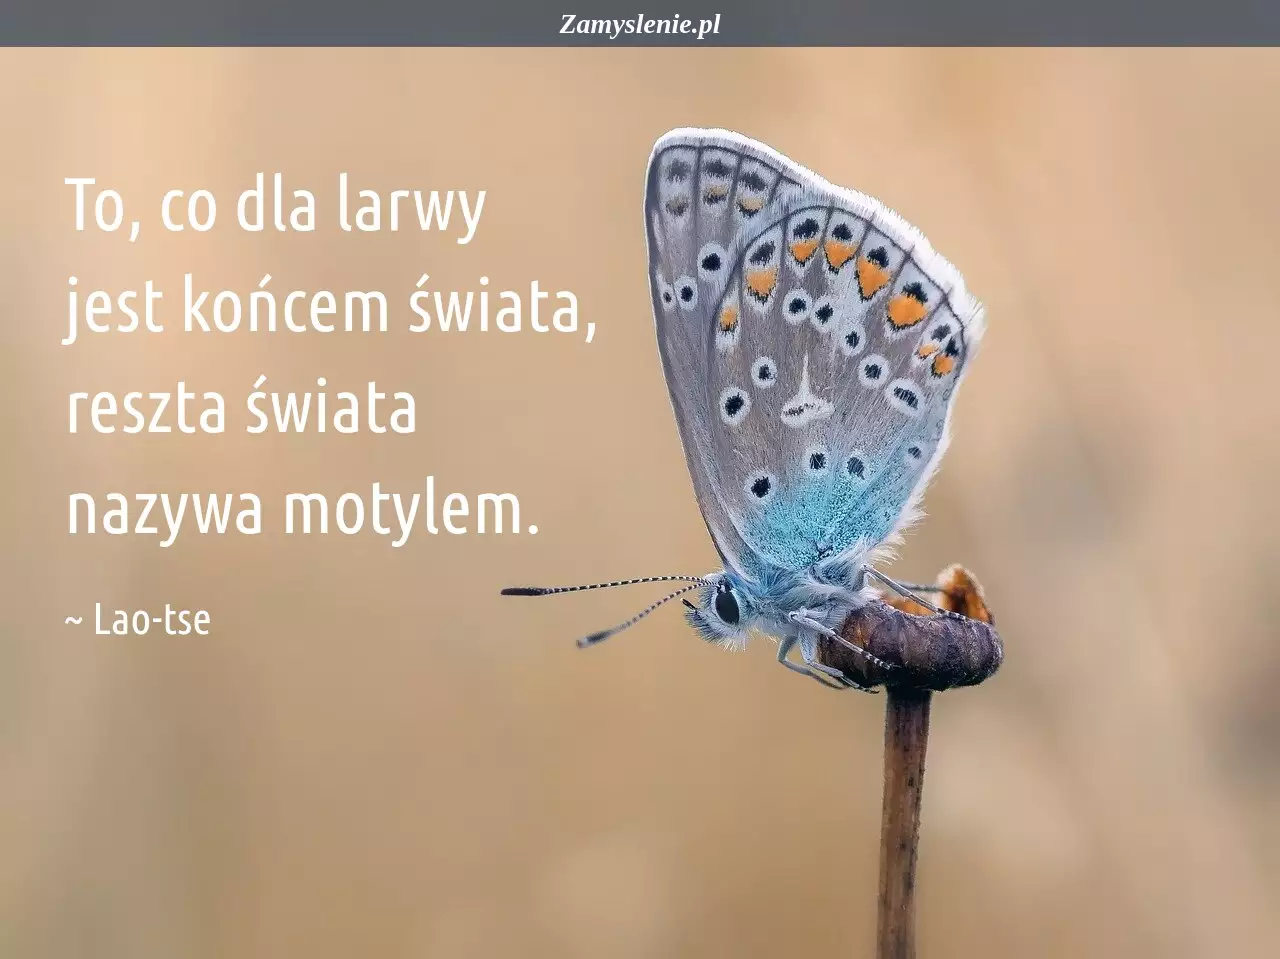 Obraz / mem do cytatu: To, co dla larwy jest końcem świata, reszta świata nazywa motylem.